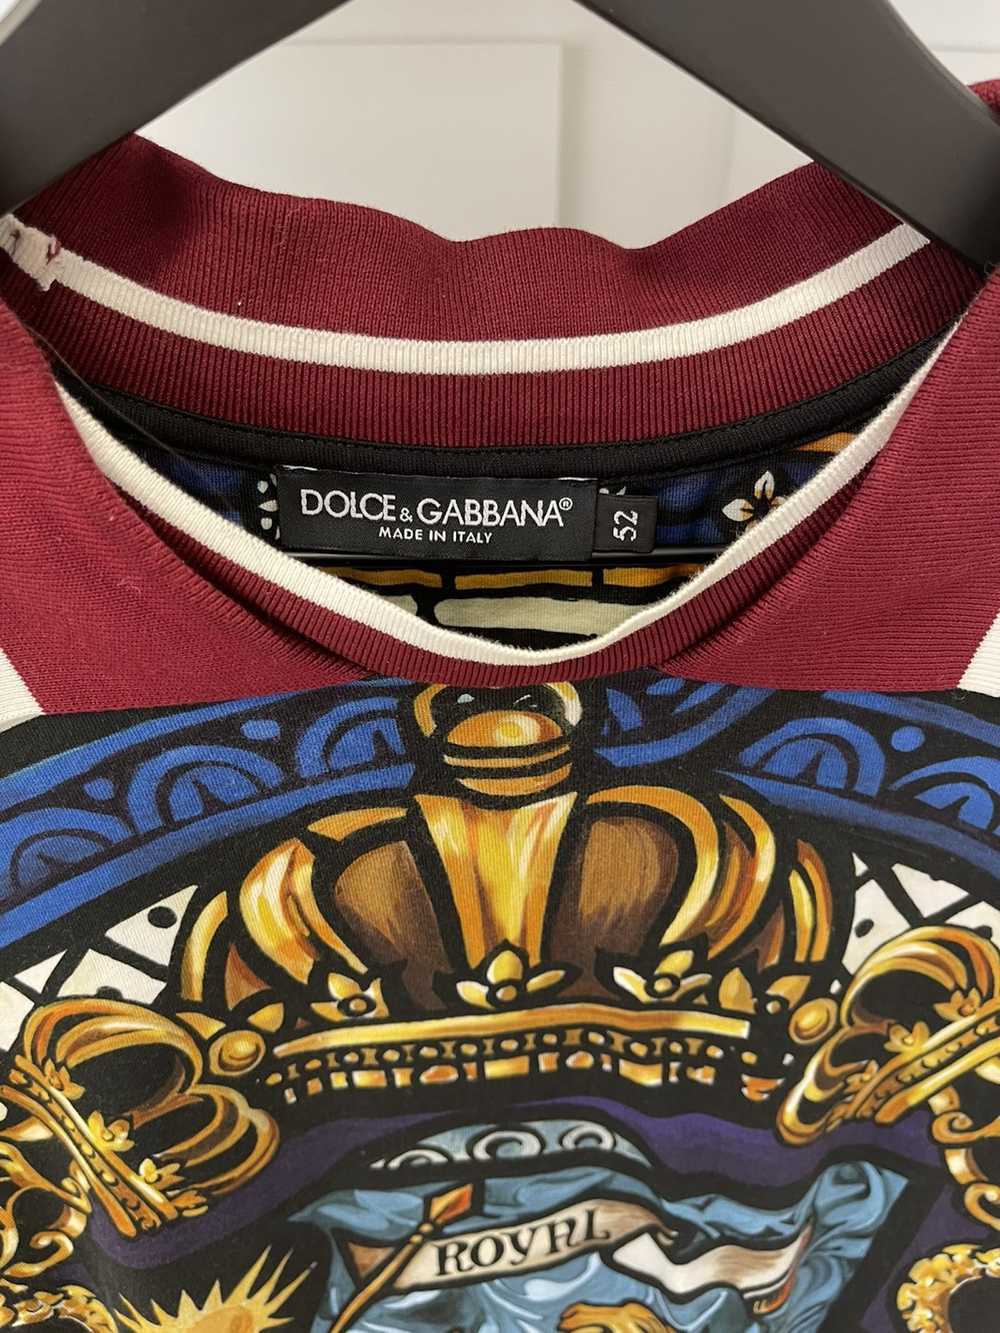 Dolce & Gabbana Dolce & Gabbana Collard Shirt - image 2